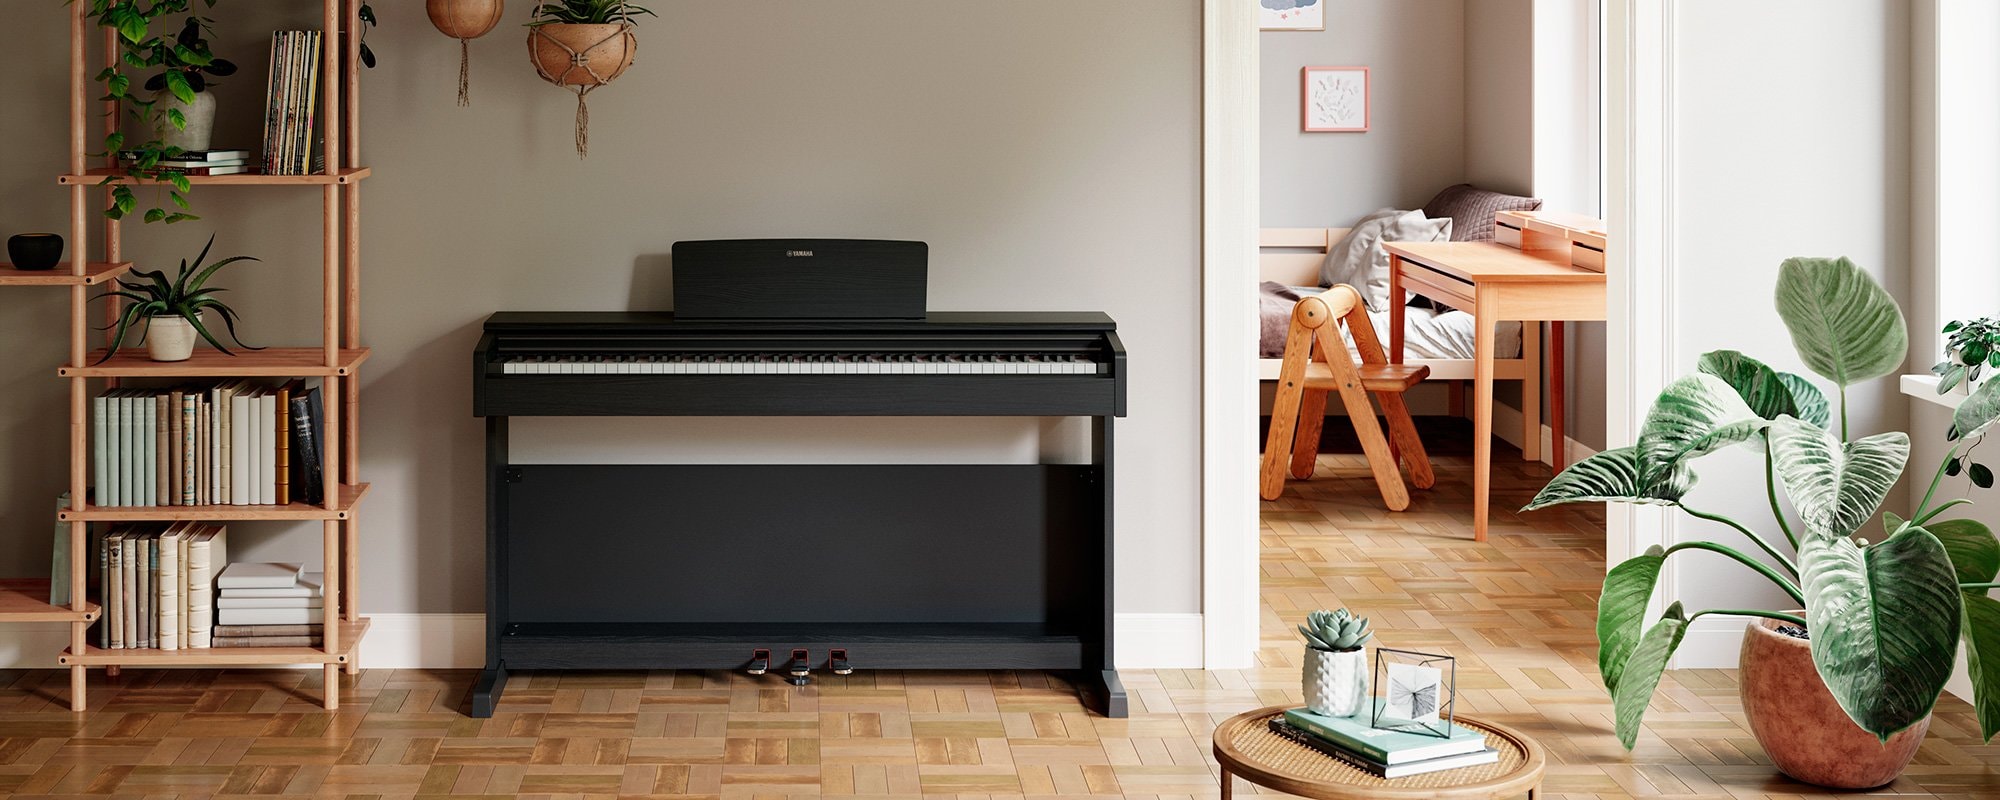 Piano numérique standard ARIUS YDP-145 en palissandre, avec banc